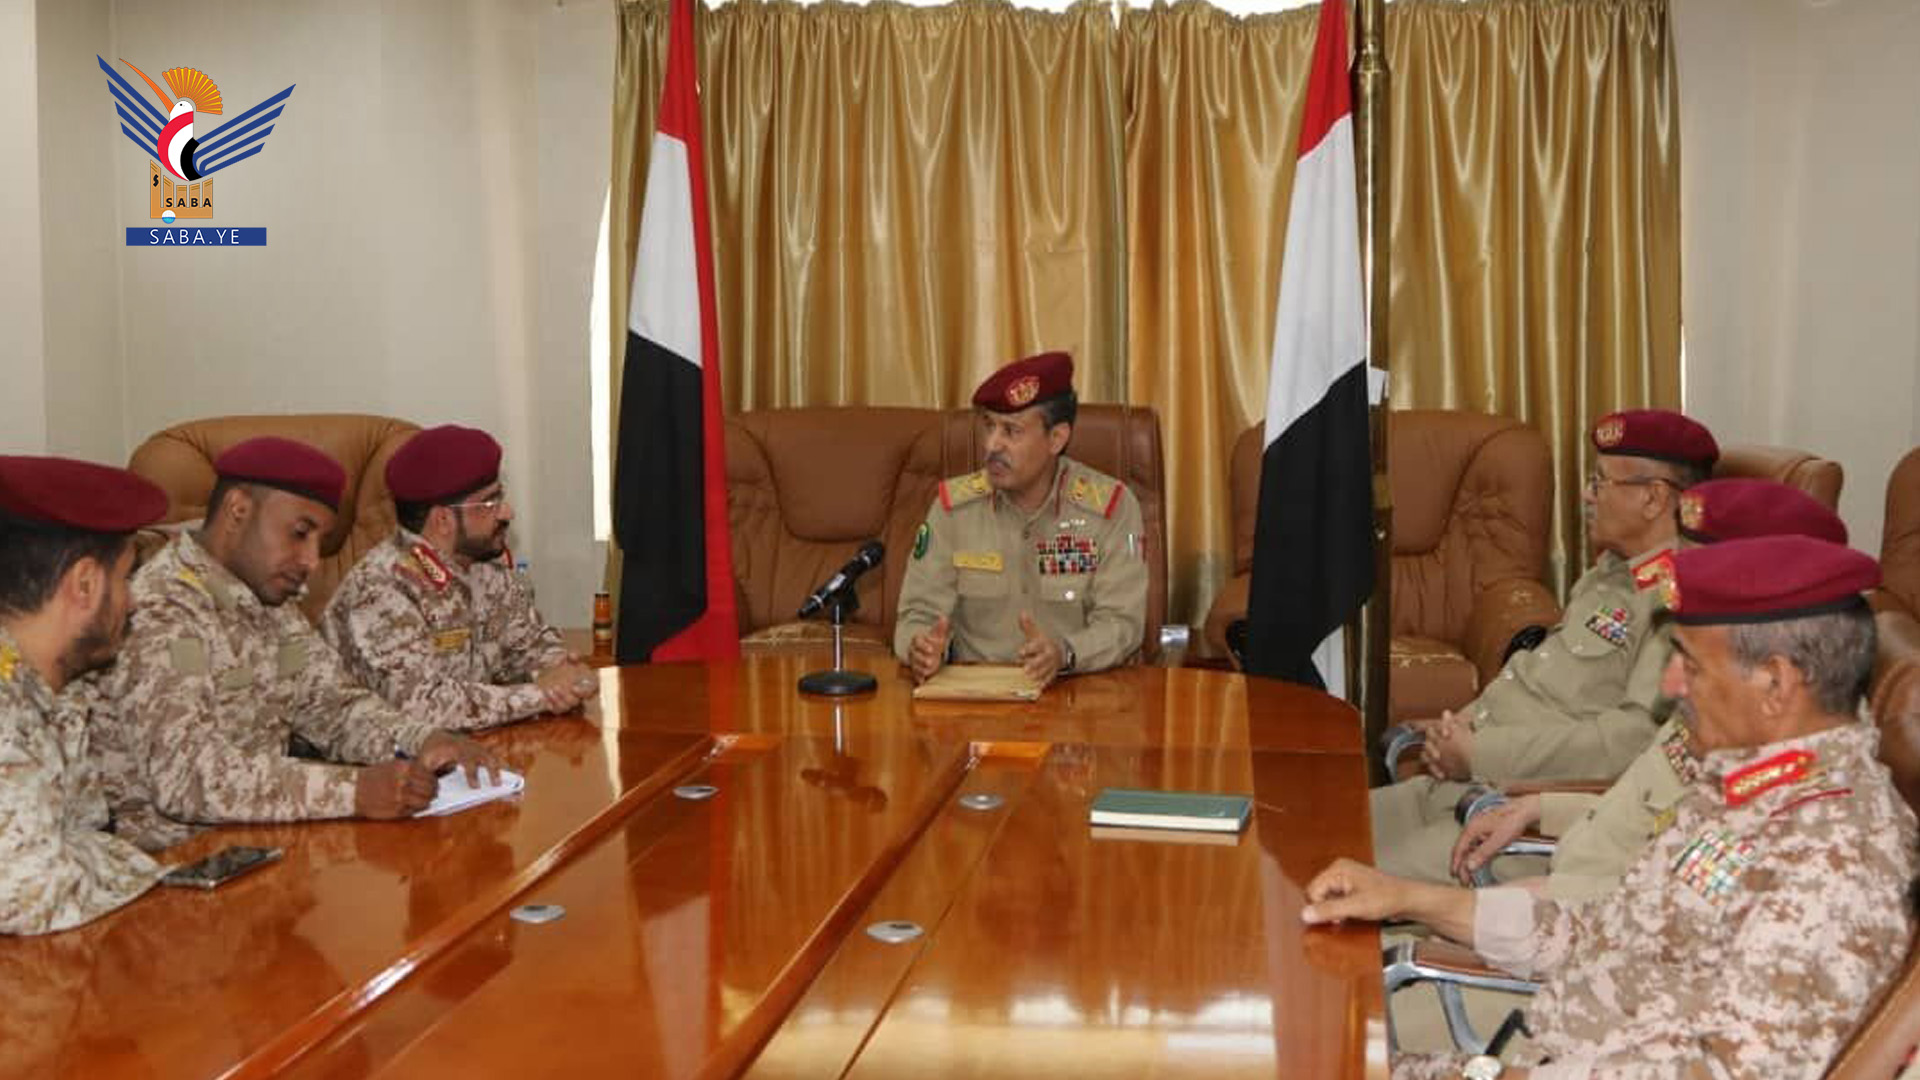   Ministre de la Défense : Sana'a donne la priorité à la sécurité, à la stabilité, à une paix honorable basée sur l'égalité de traitement